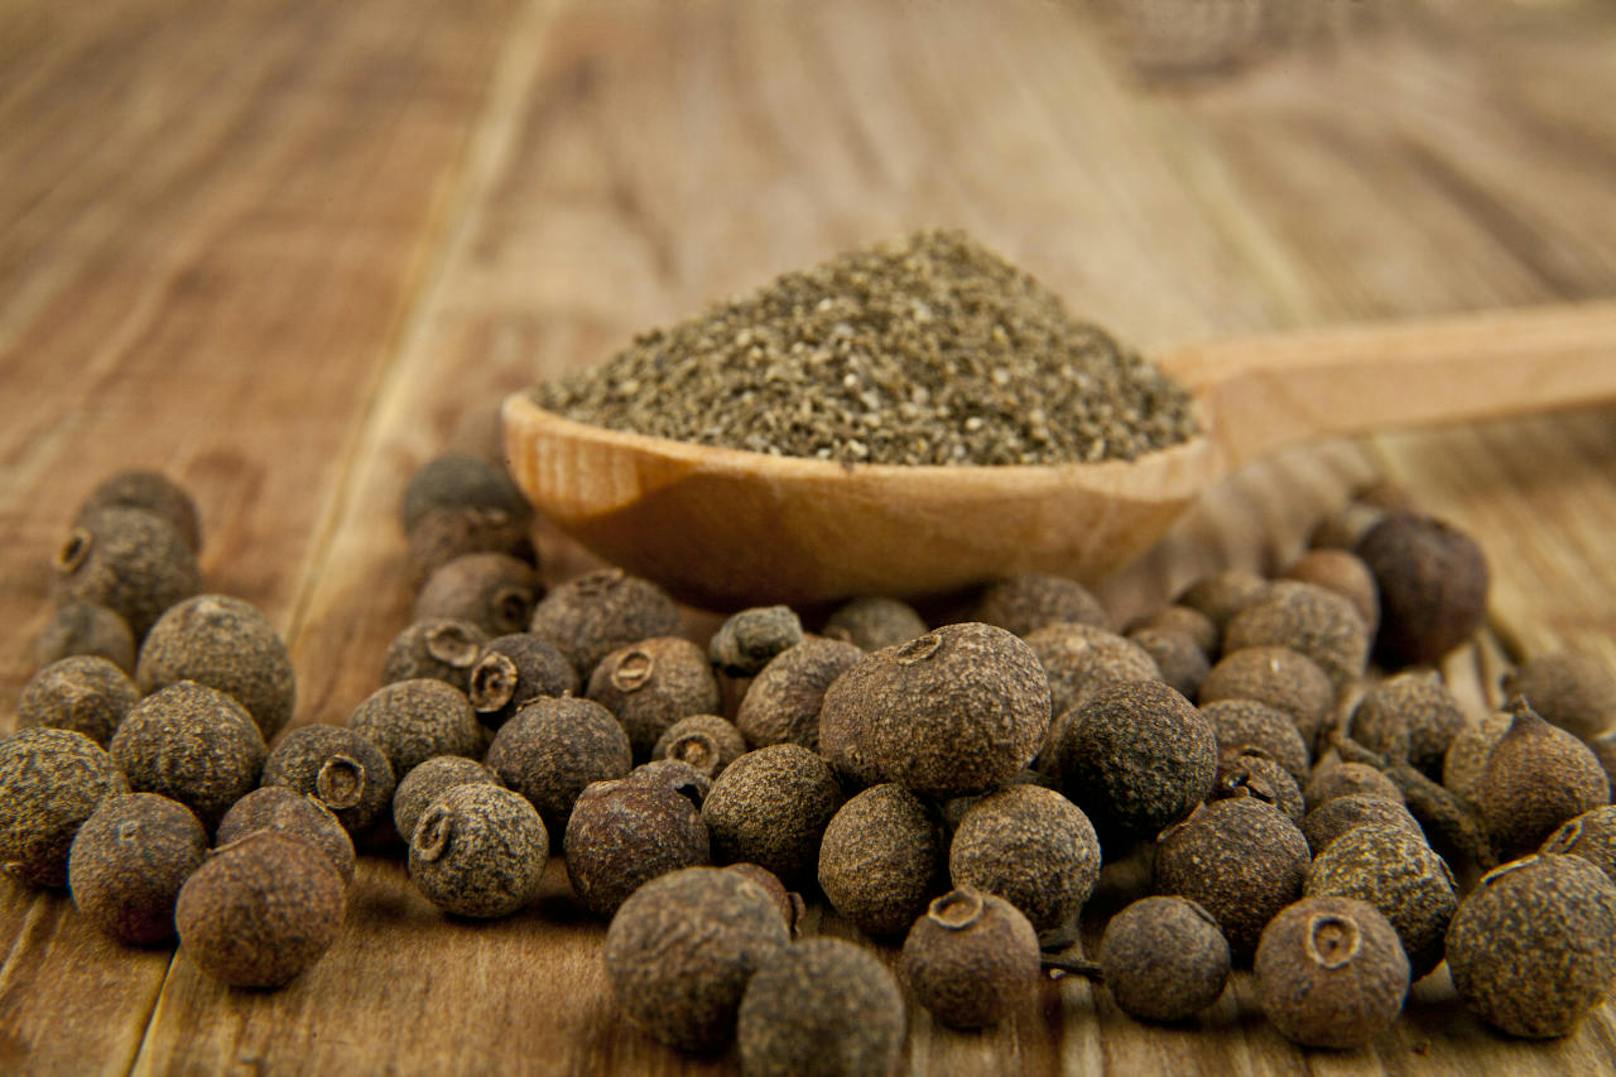 Piment (Nelkenpfeffer): Die kleinen runden Samen bringen Pep in Saucen, Suppen und Süßspeisen. Geschmacklich vereinigen sie die Schärfe von Pfeffer und das Aroma von Gewürznelken.